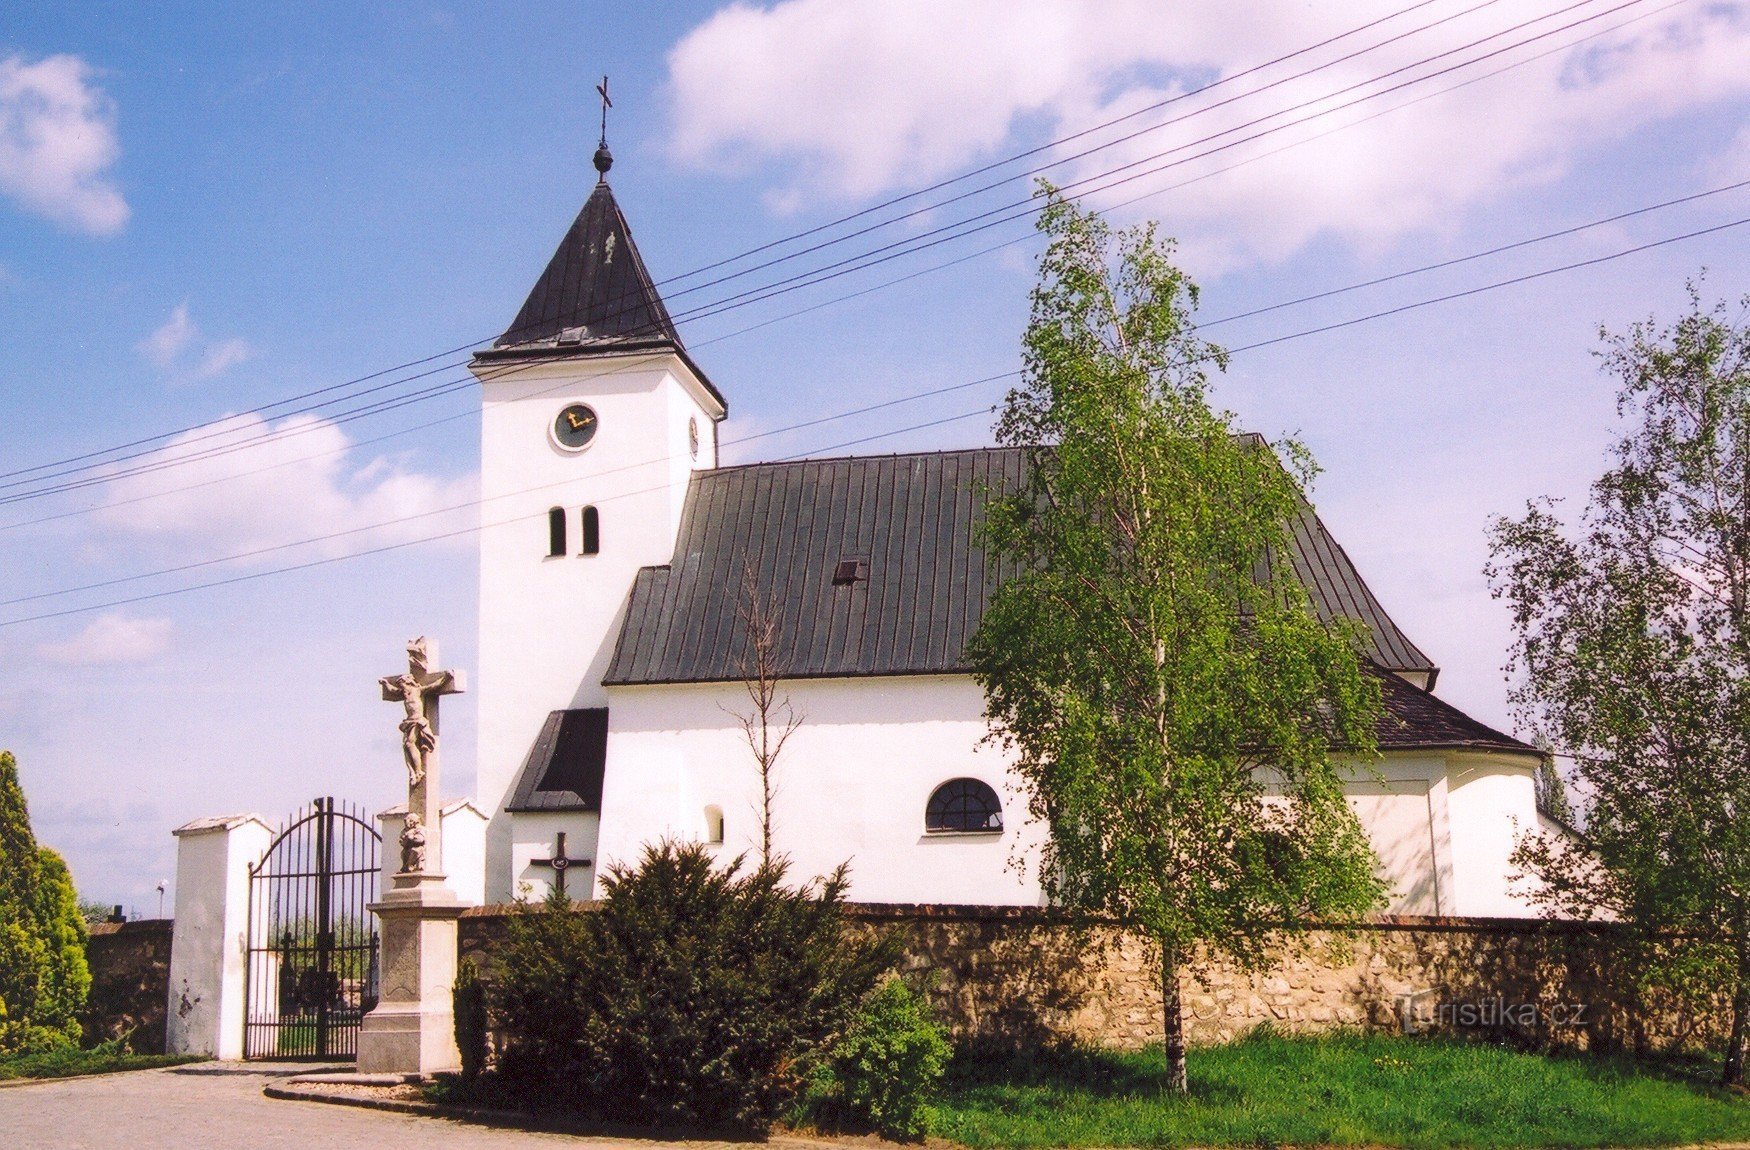 Žatčany - Den heliga treenighetens kyrka